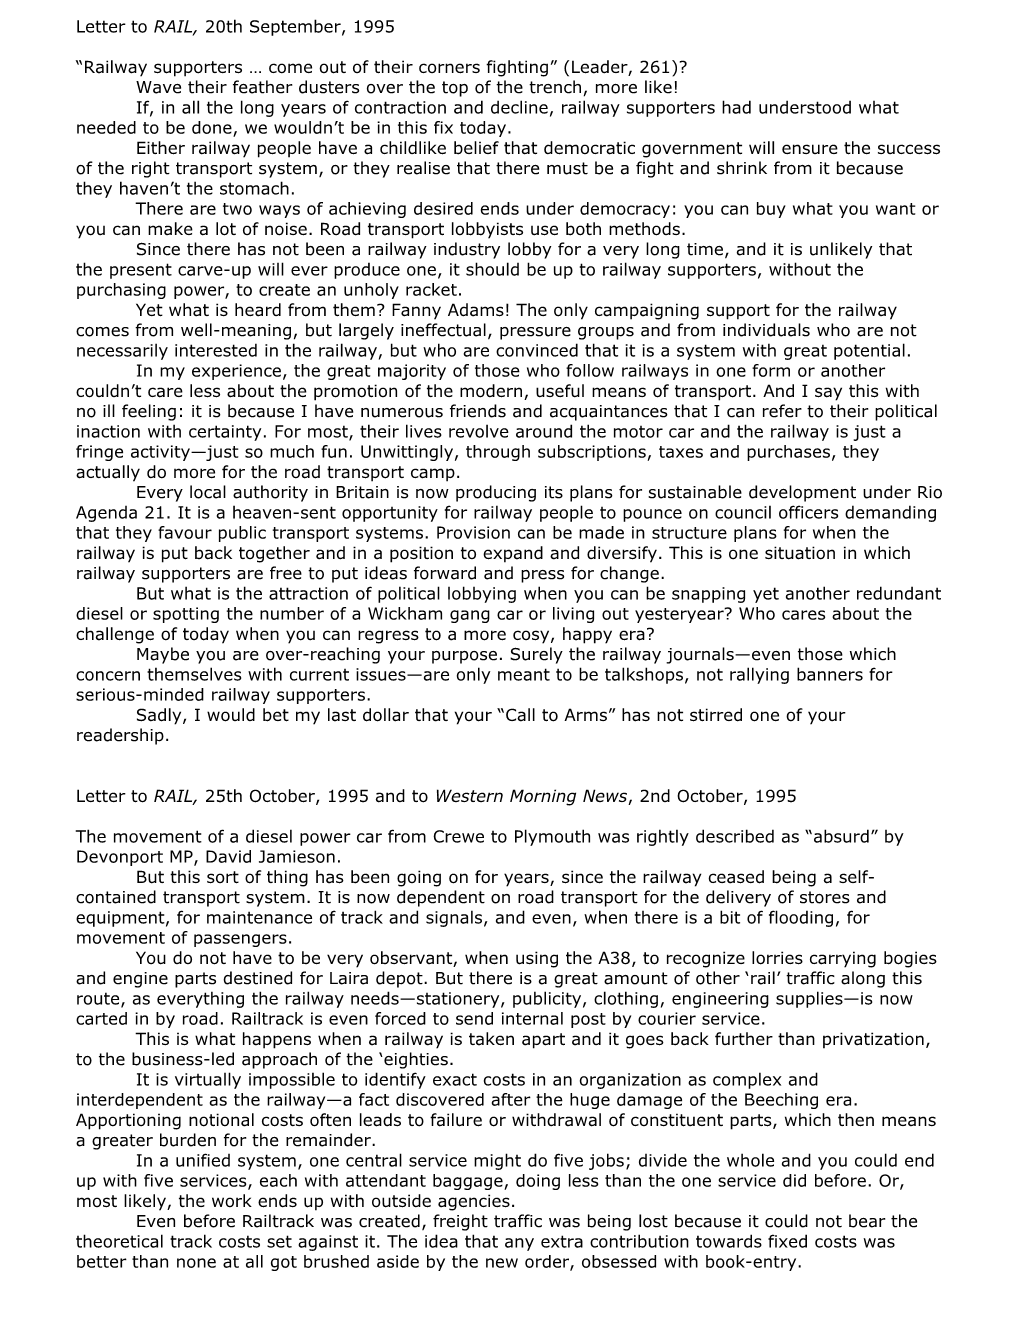 Letter to RAIL, 20Th September, 1995